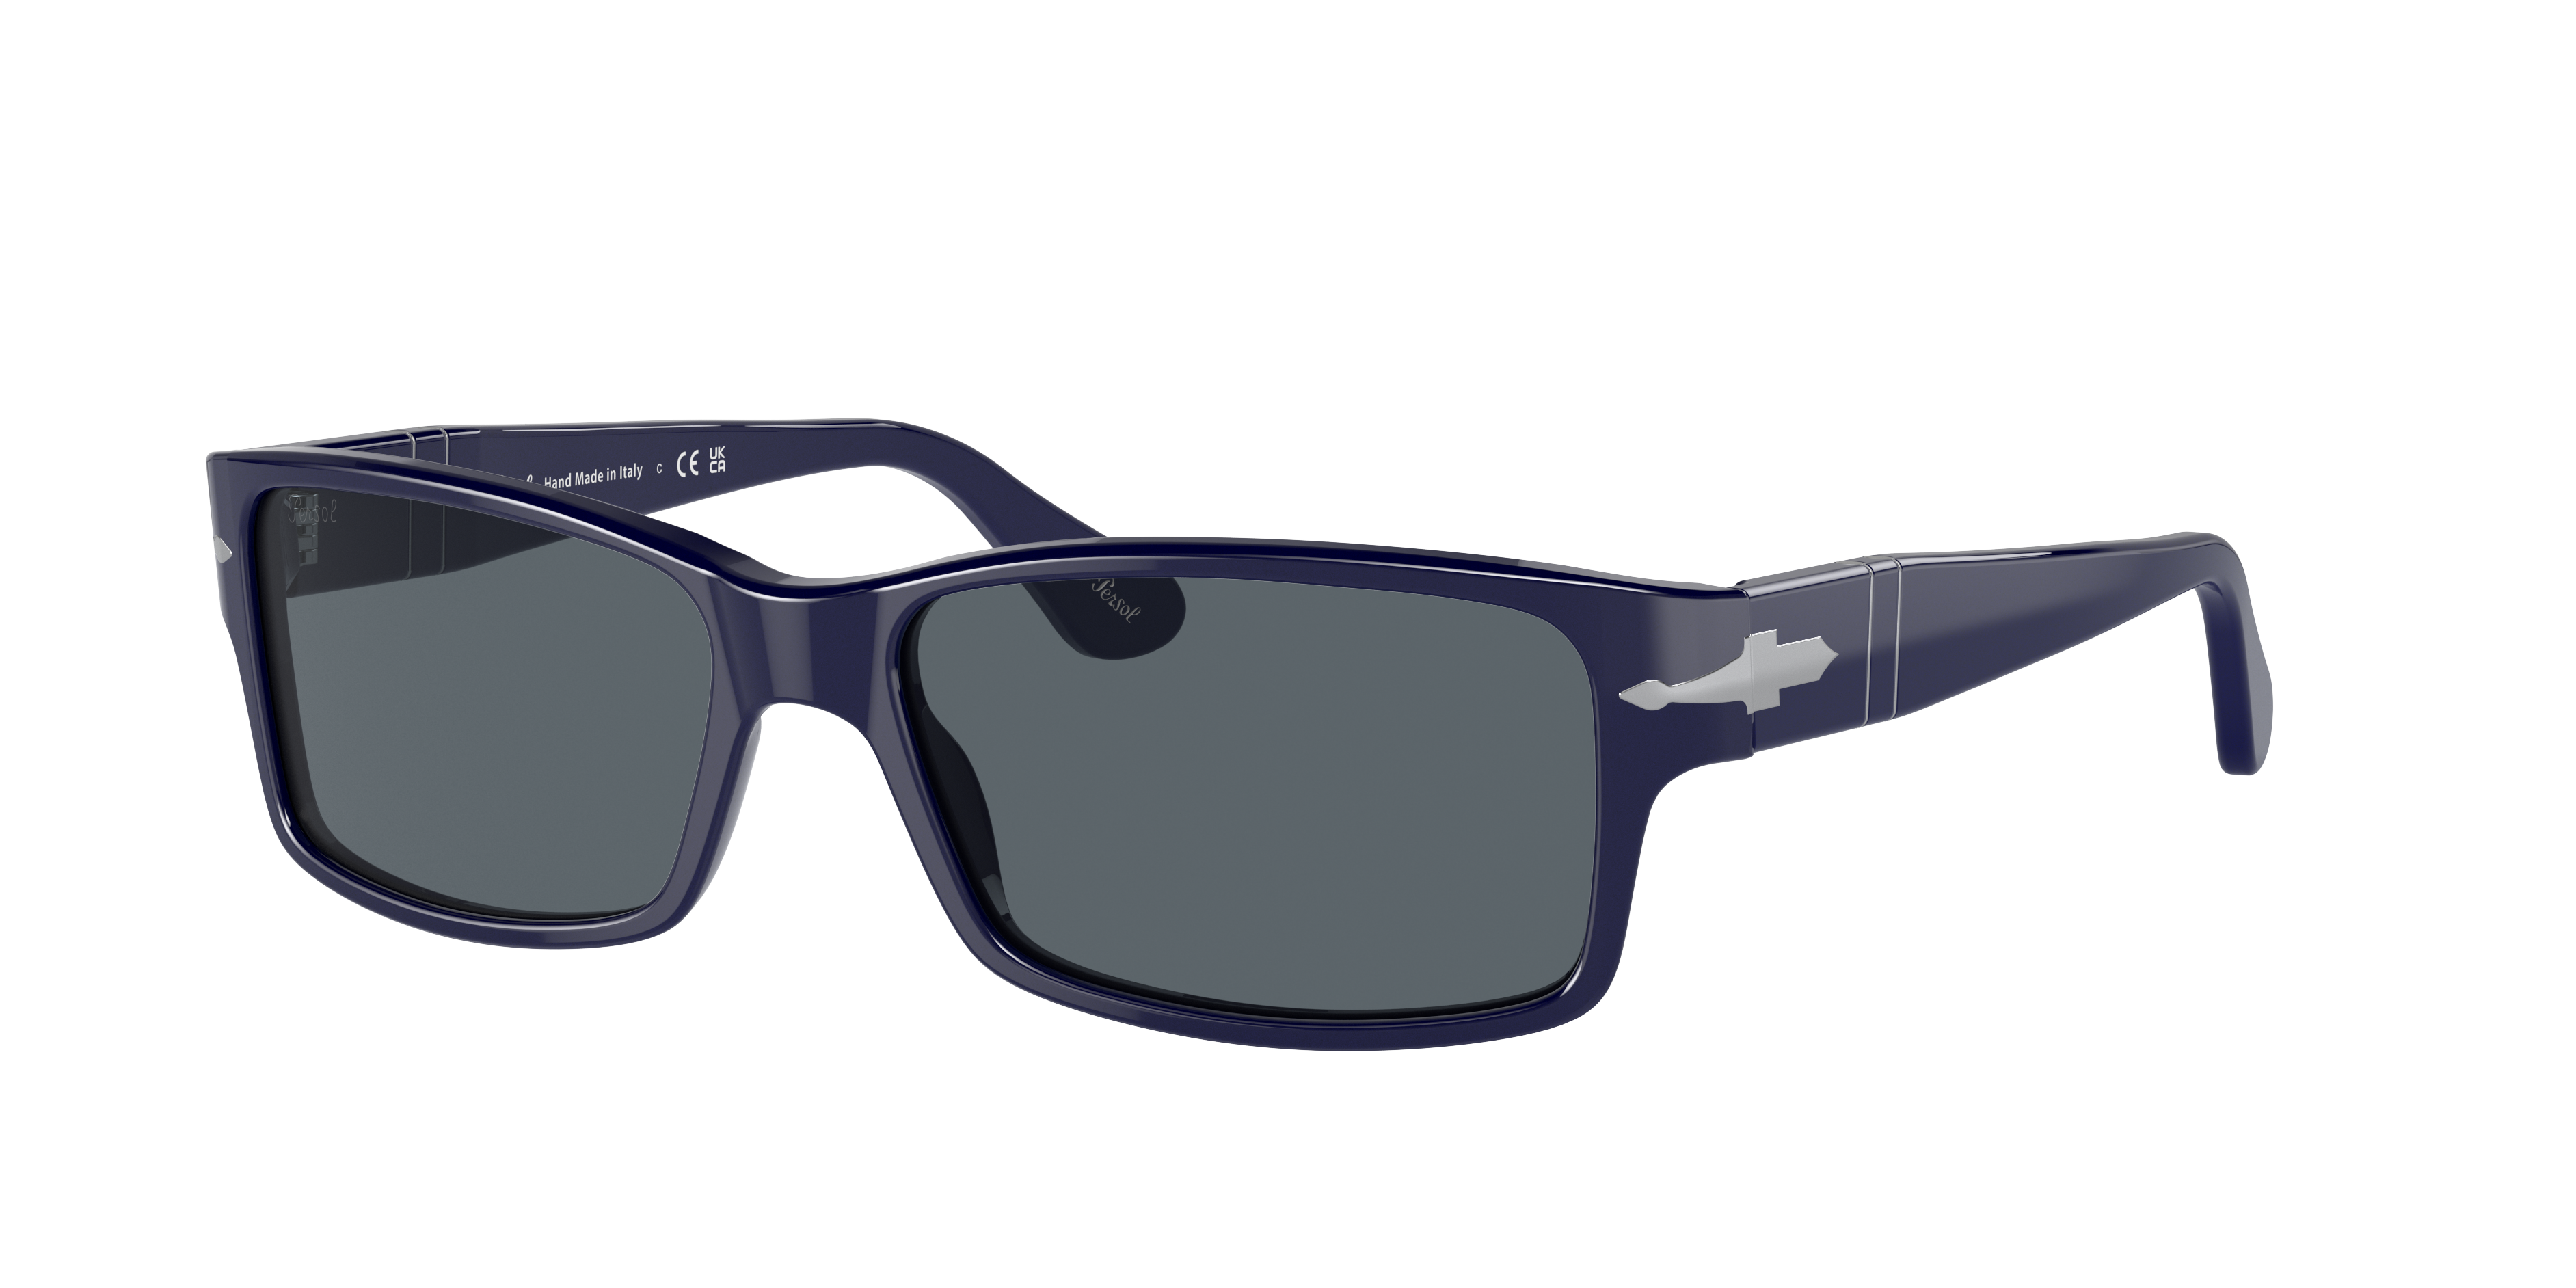 Consulte nosso catálogo de Óculos de Sol Persol Eyewear com diversos modelos e preços para sua escolha.